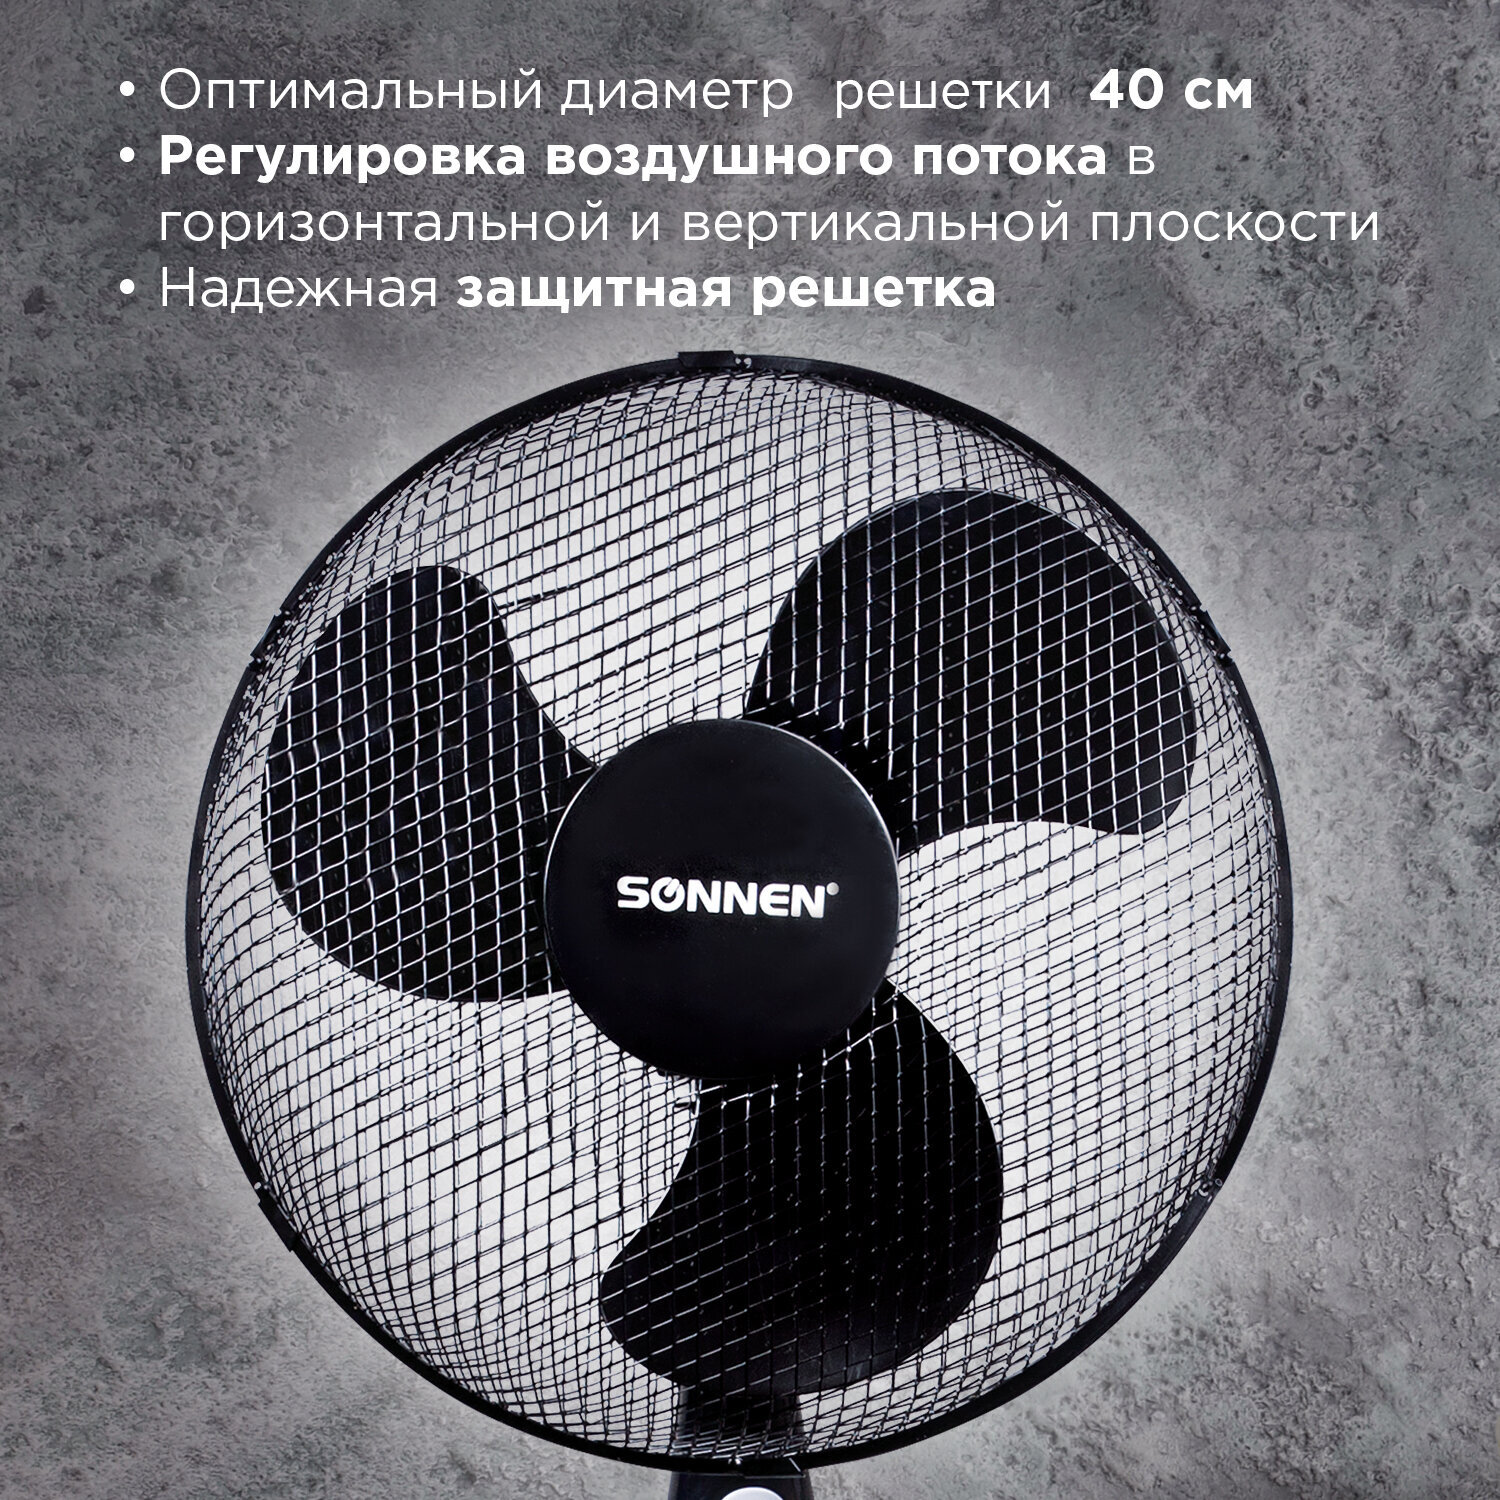 Вентилятор напольный Sonnen FS40-A55 3 скоростных режима таймер d=40 см 45Вт - фото 6